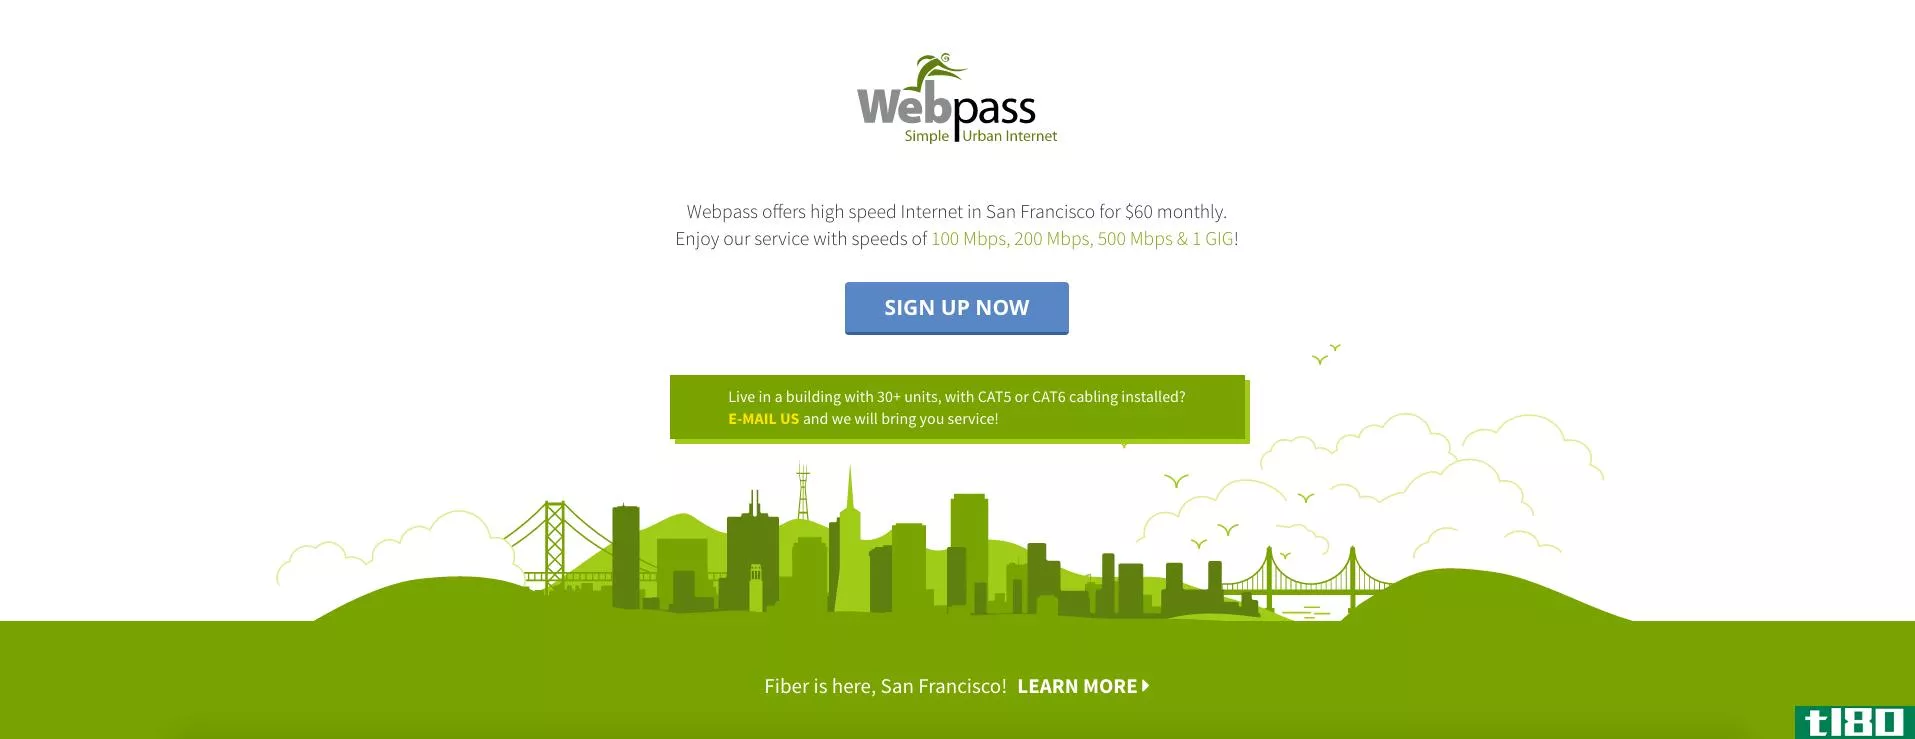 谷歌光纤公司旗下的webpass将其无线千兆互联网带到丹佛